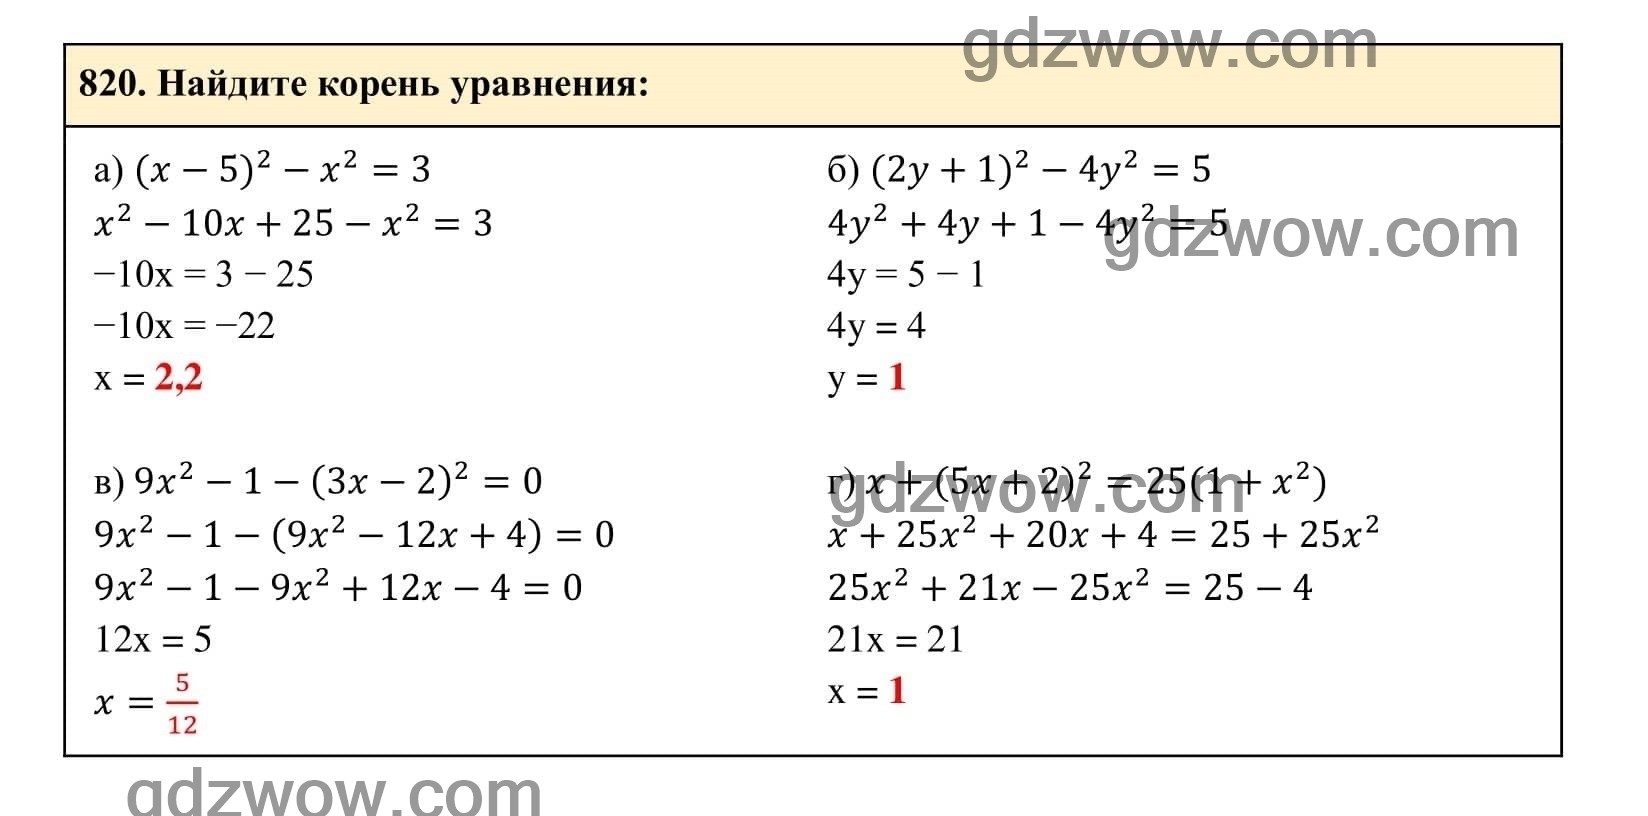 Упражнение 820 - ГДЗ по Алгебре 7 класс Учебник Макарычев (решебник) - GDZwow